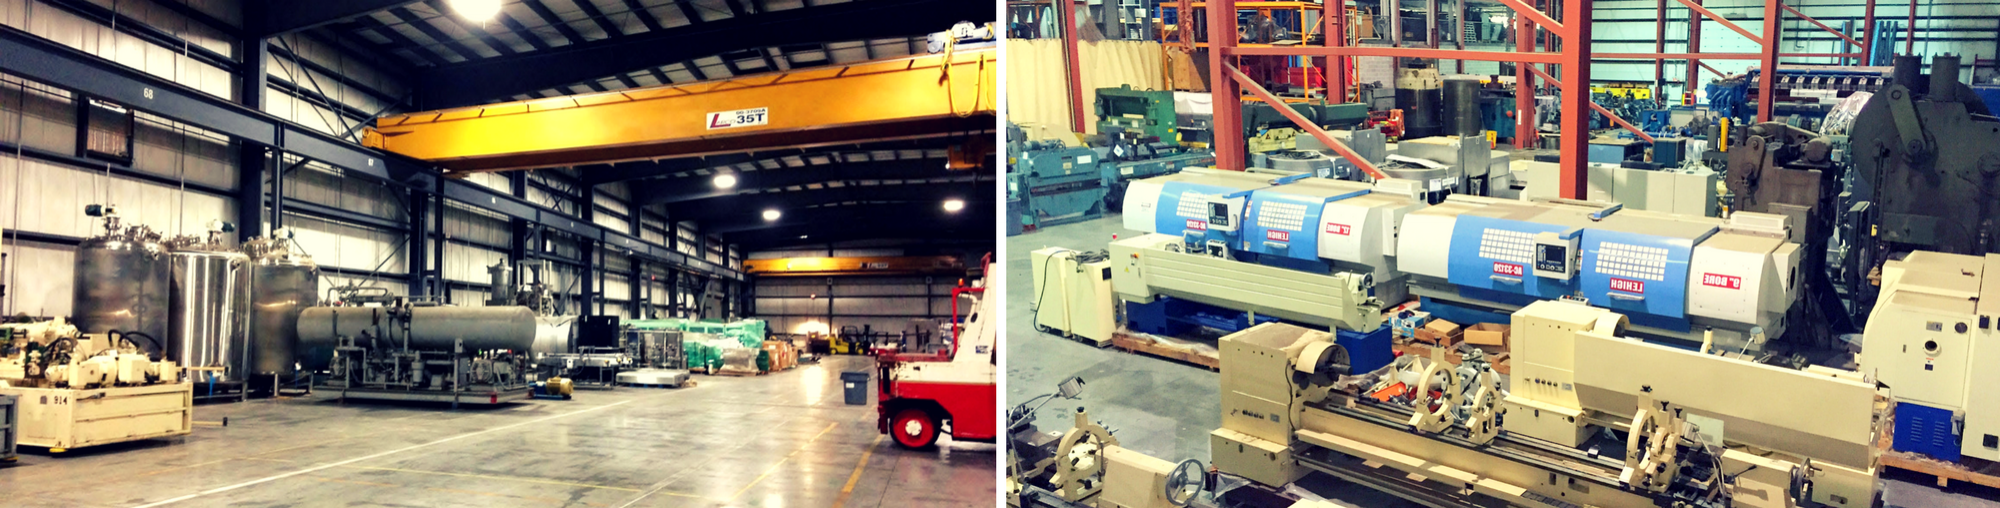 Machinery Warehousing & Equipment Storage